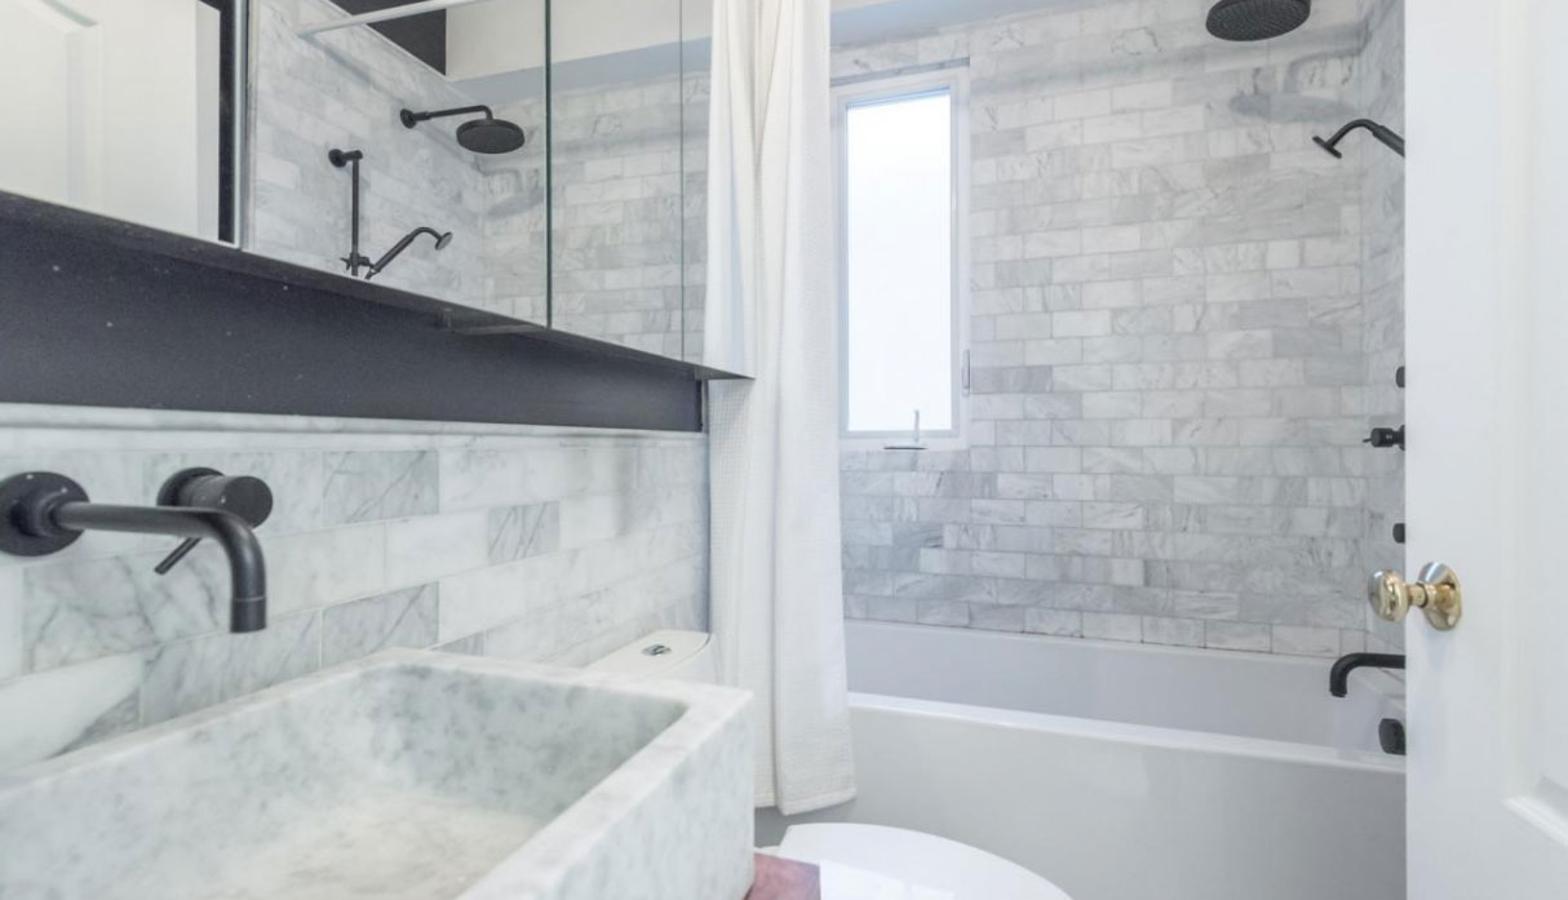 Cuartos de baño. Los cuartos de baño son de diseño contemporáneo en marmol blanco. Además de la distribución mencionada, la casa tiene también una enorme sala de cine